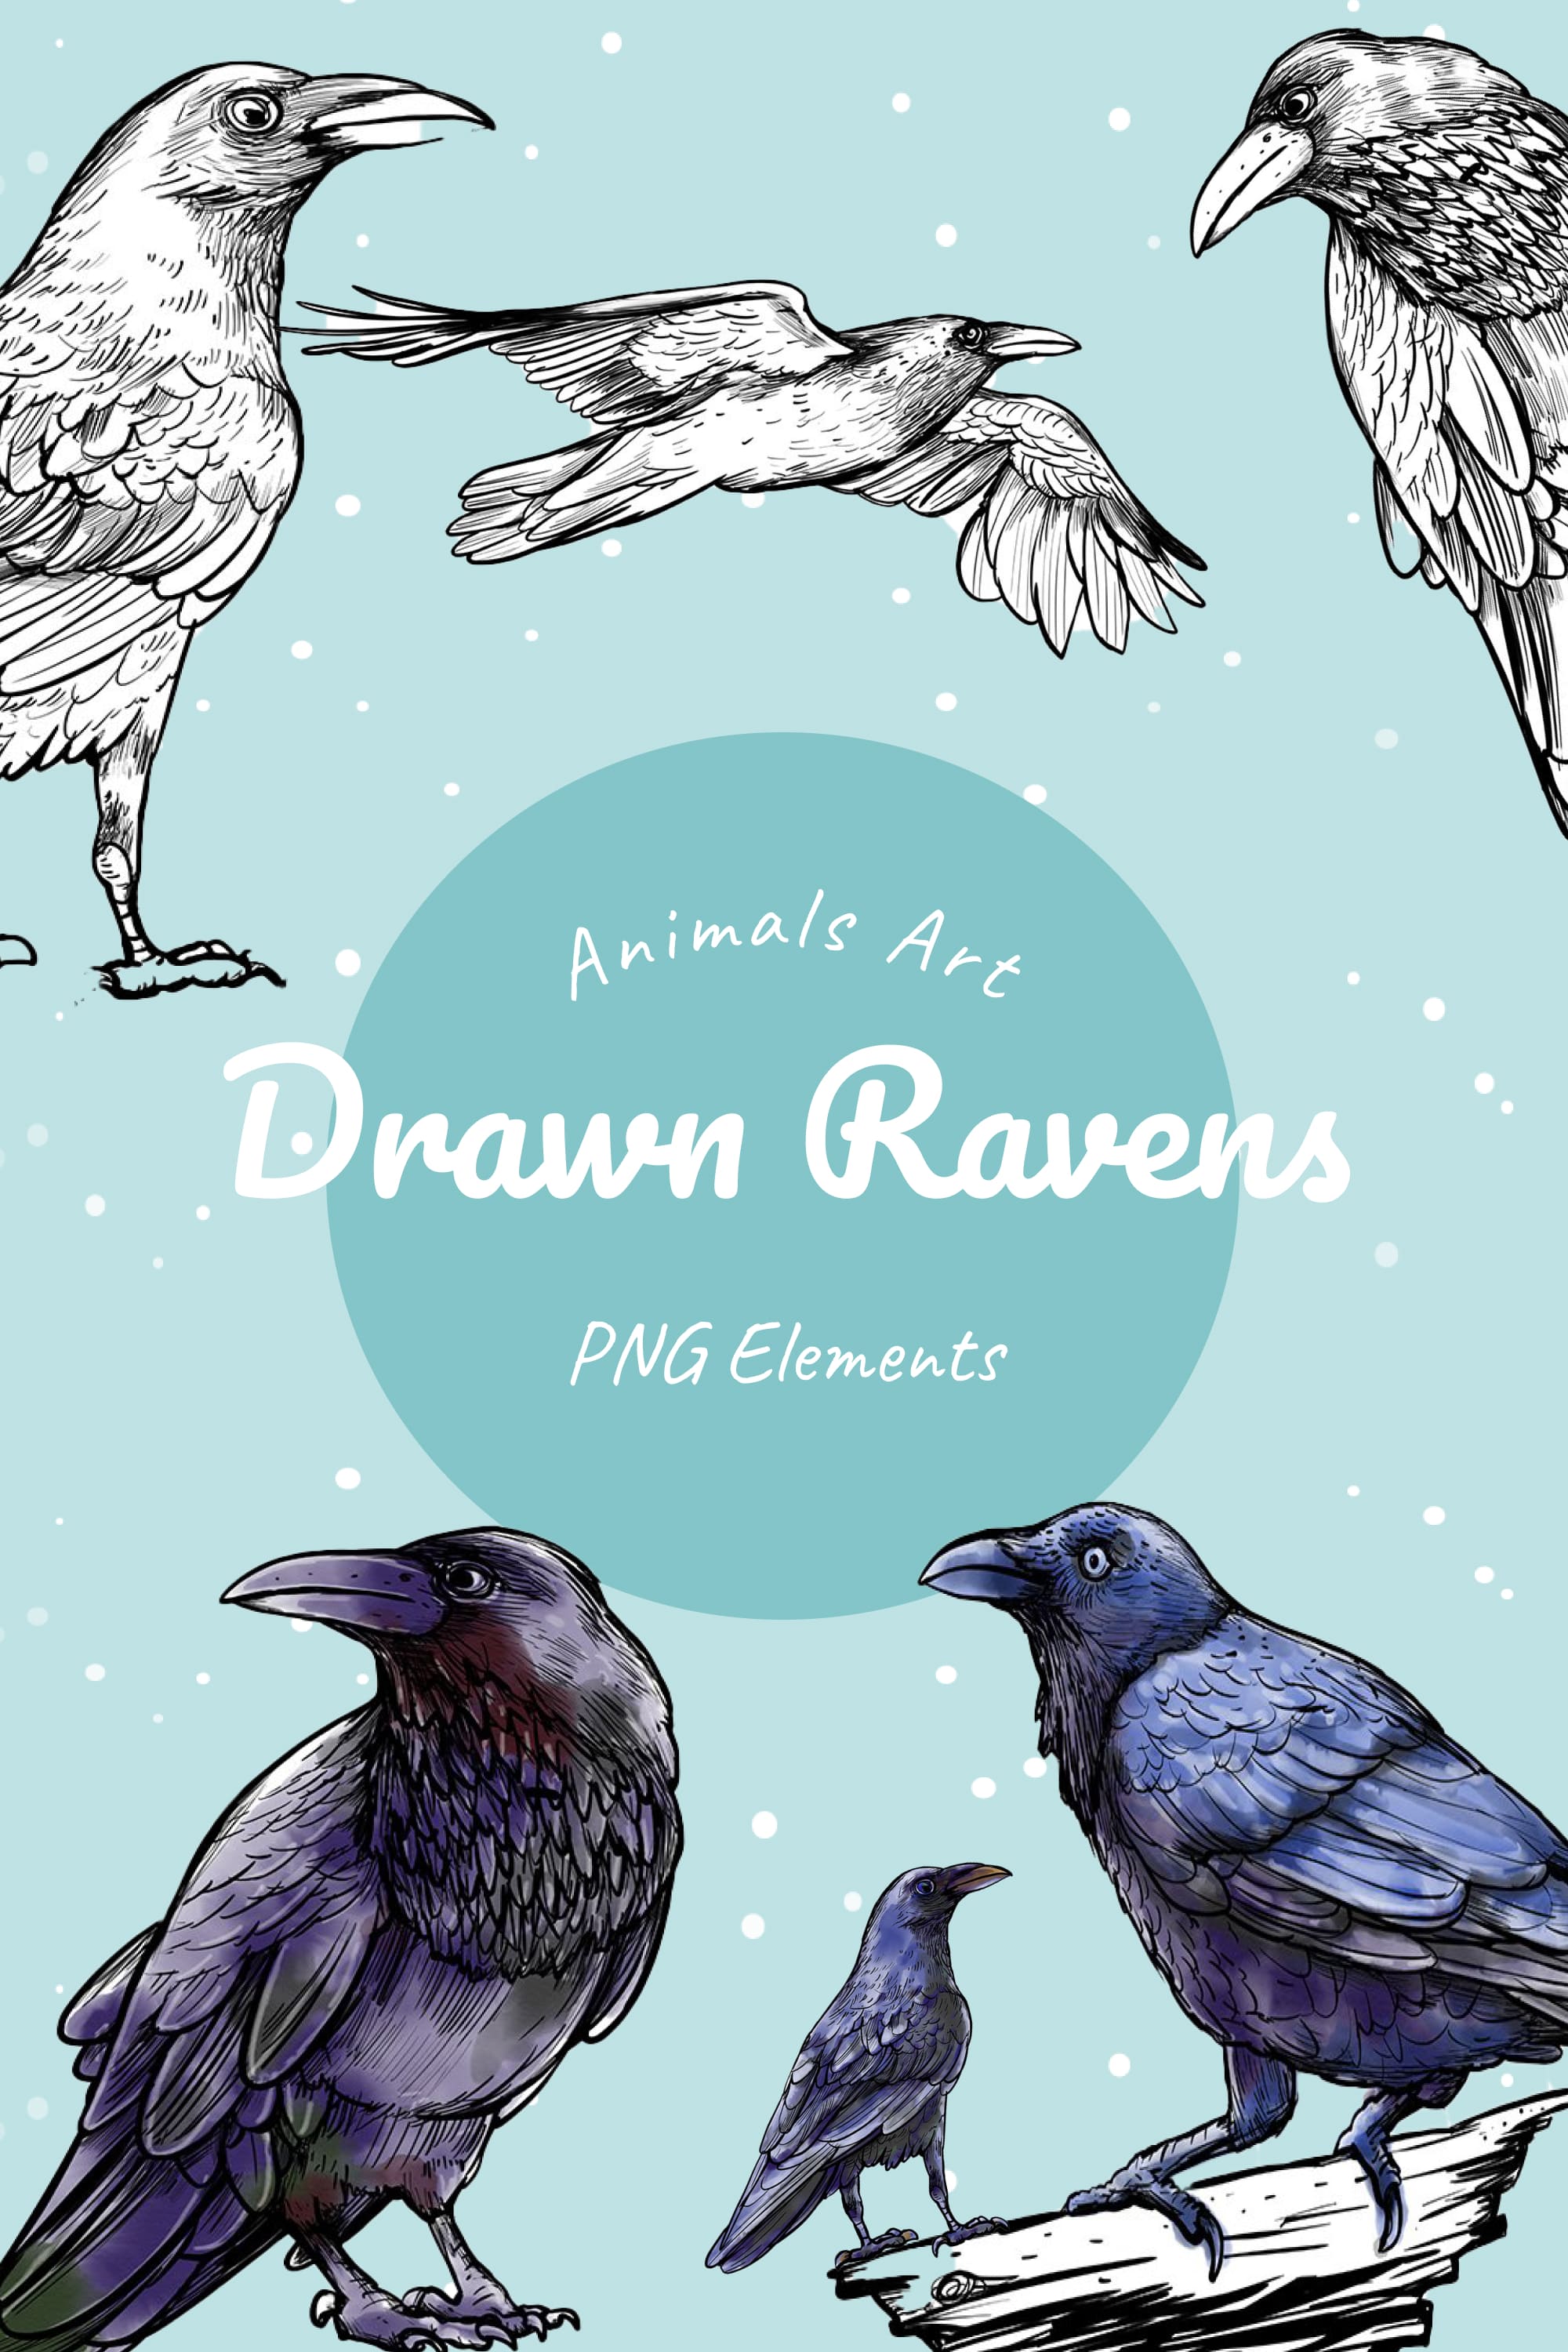 Drawn ravens - pinterest image preview.